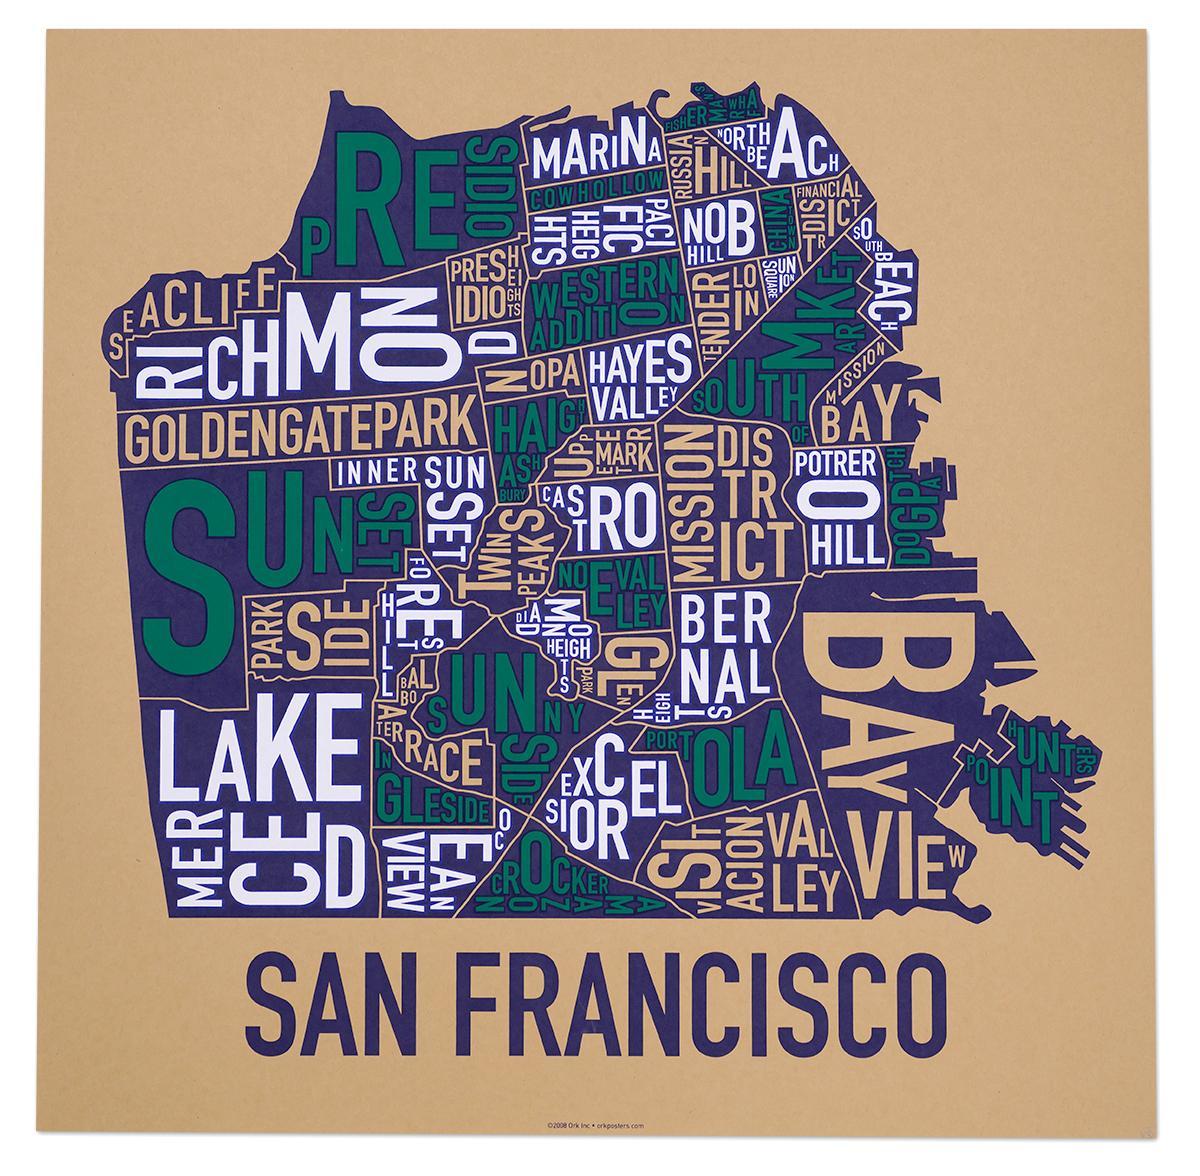 San Francisco, bairro do mapa pôster